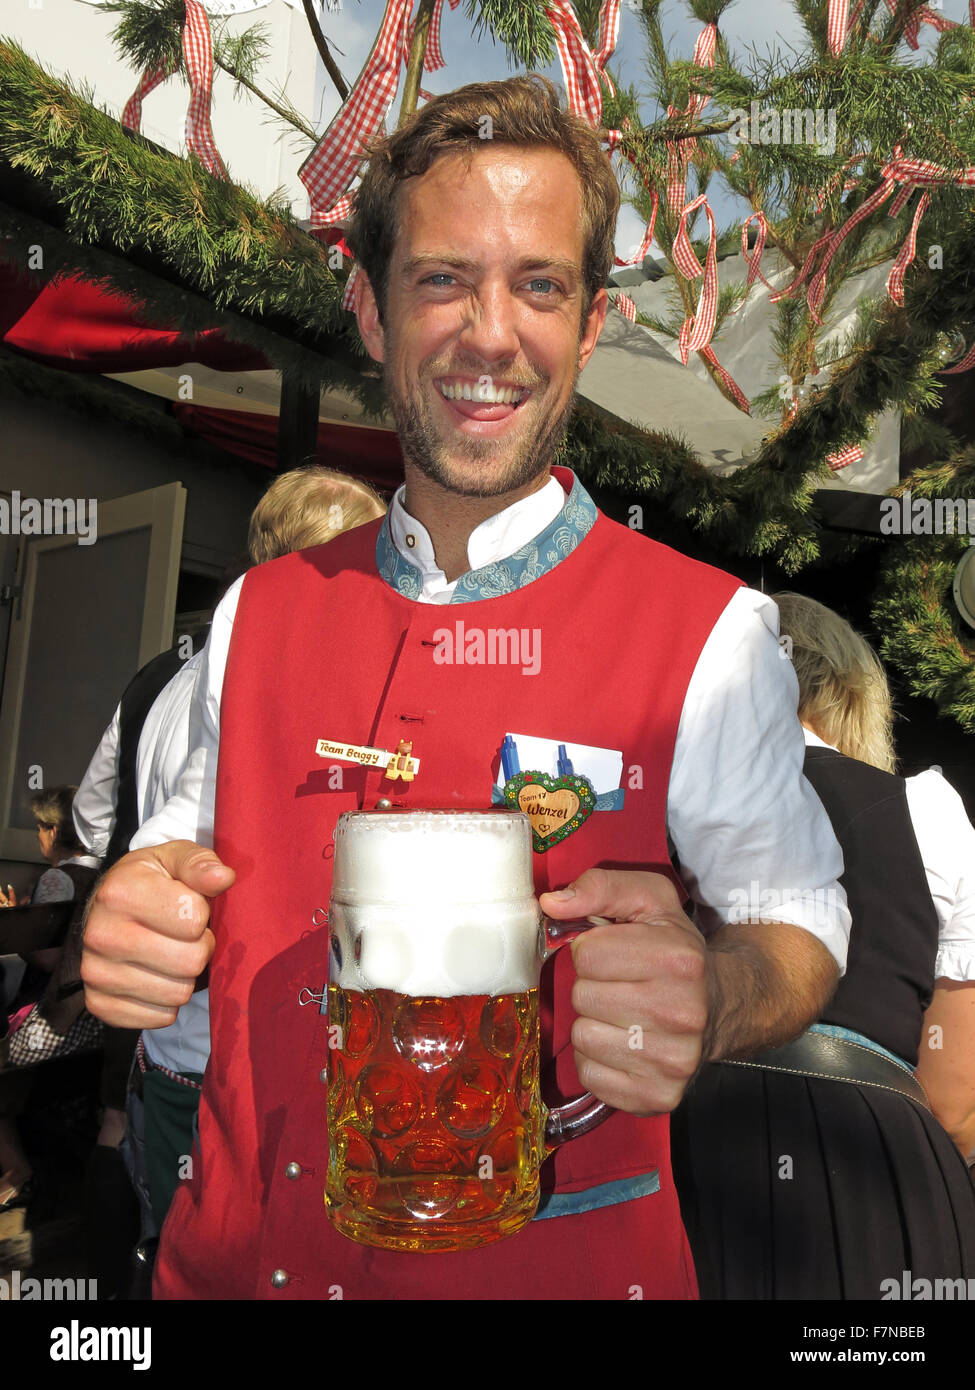 Serveur avec l'Oktoberfest lager bier stein, Munich, Allemagne Banque D'Images